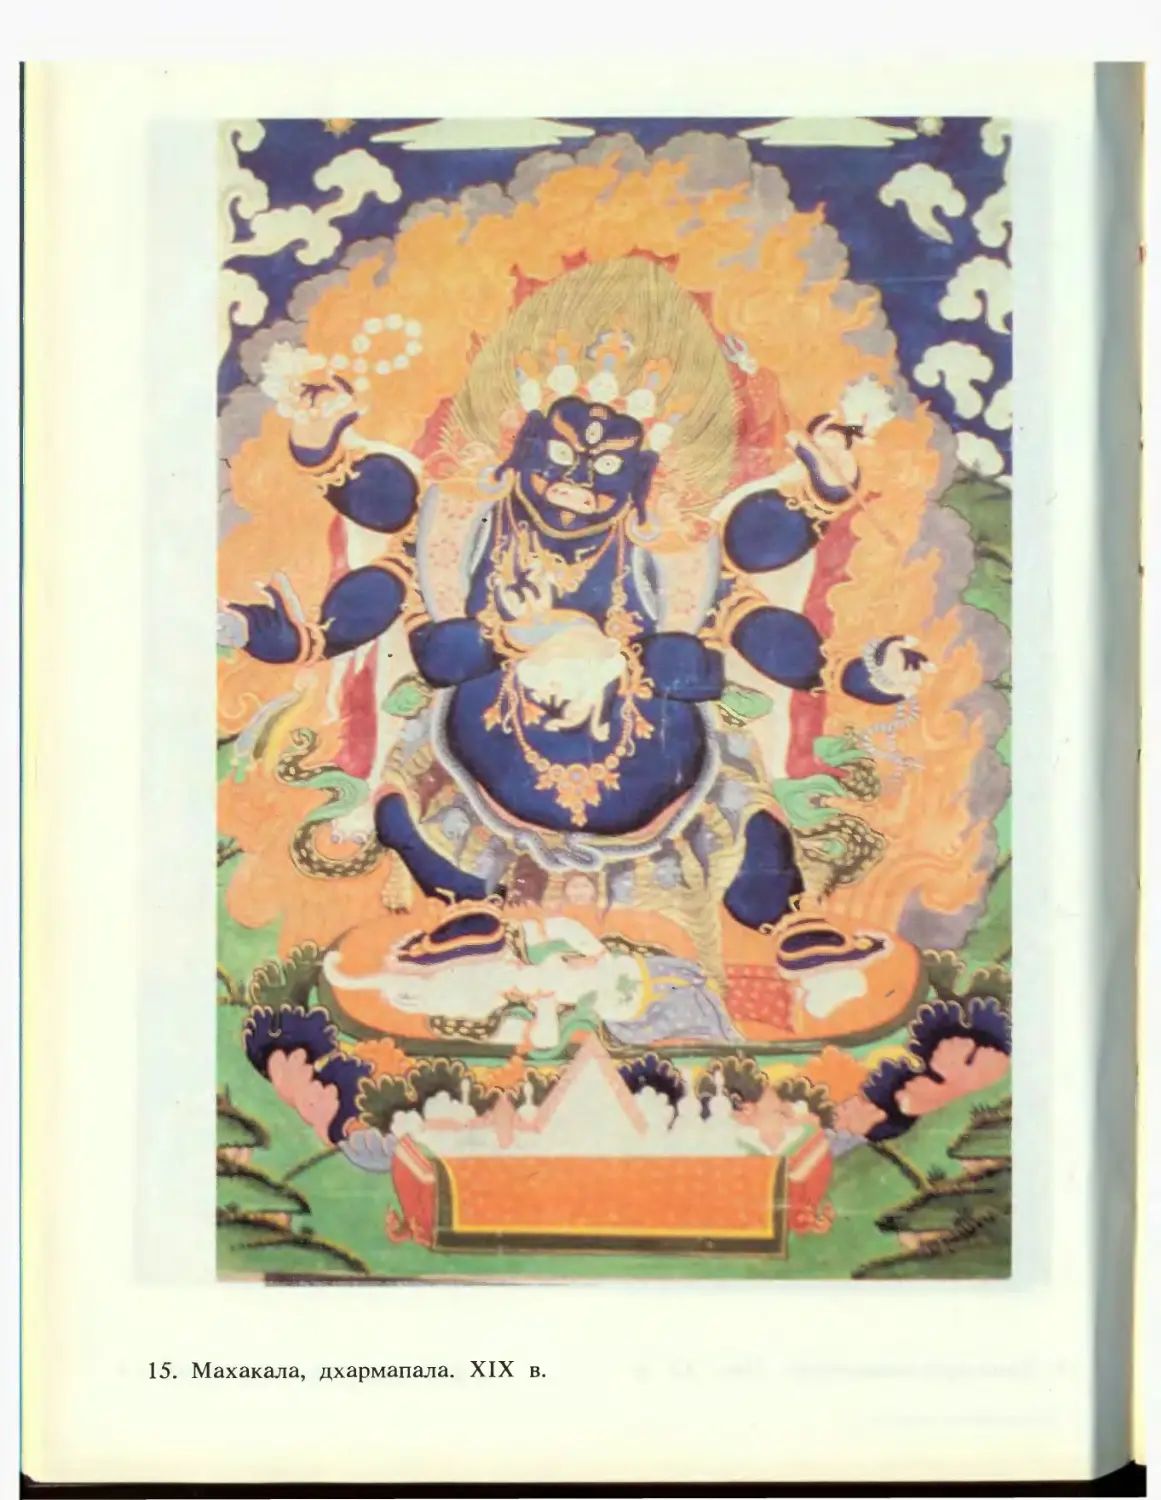 15. Махакала, дхармапала. XIX в.